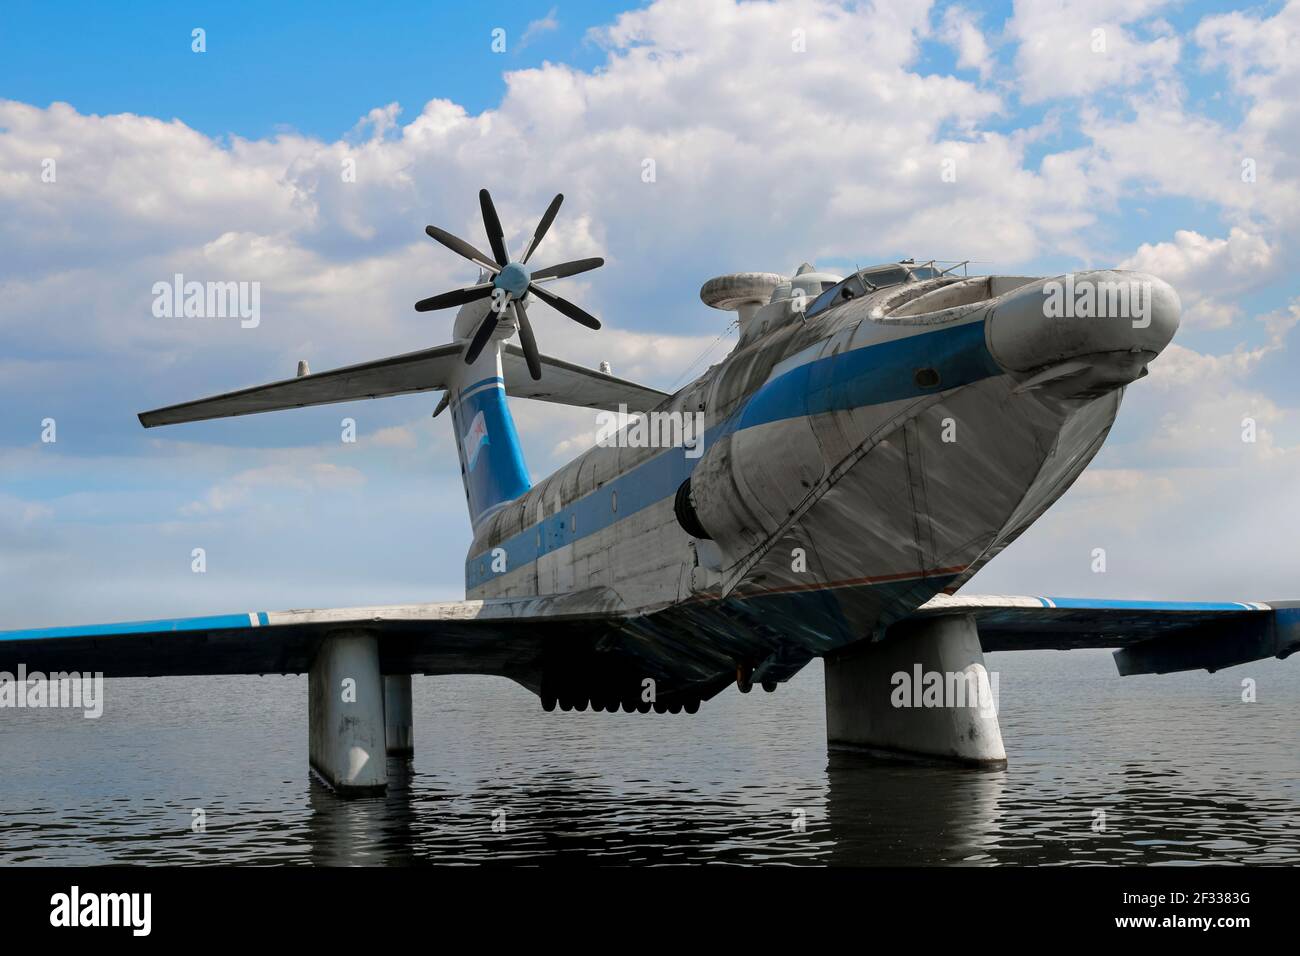 La marina sovietica A-90 Orlyonok Eaglet, un aereo a effetto terra progettato negli anni '60 dal Central Hydrofoil Design Bureau. Solo 4 sono stati costruiti. Foto Stock